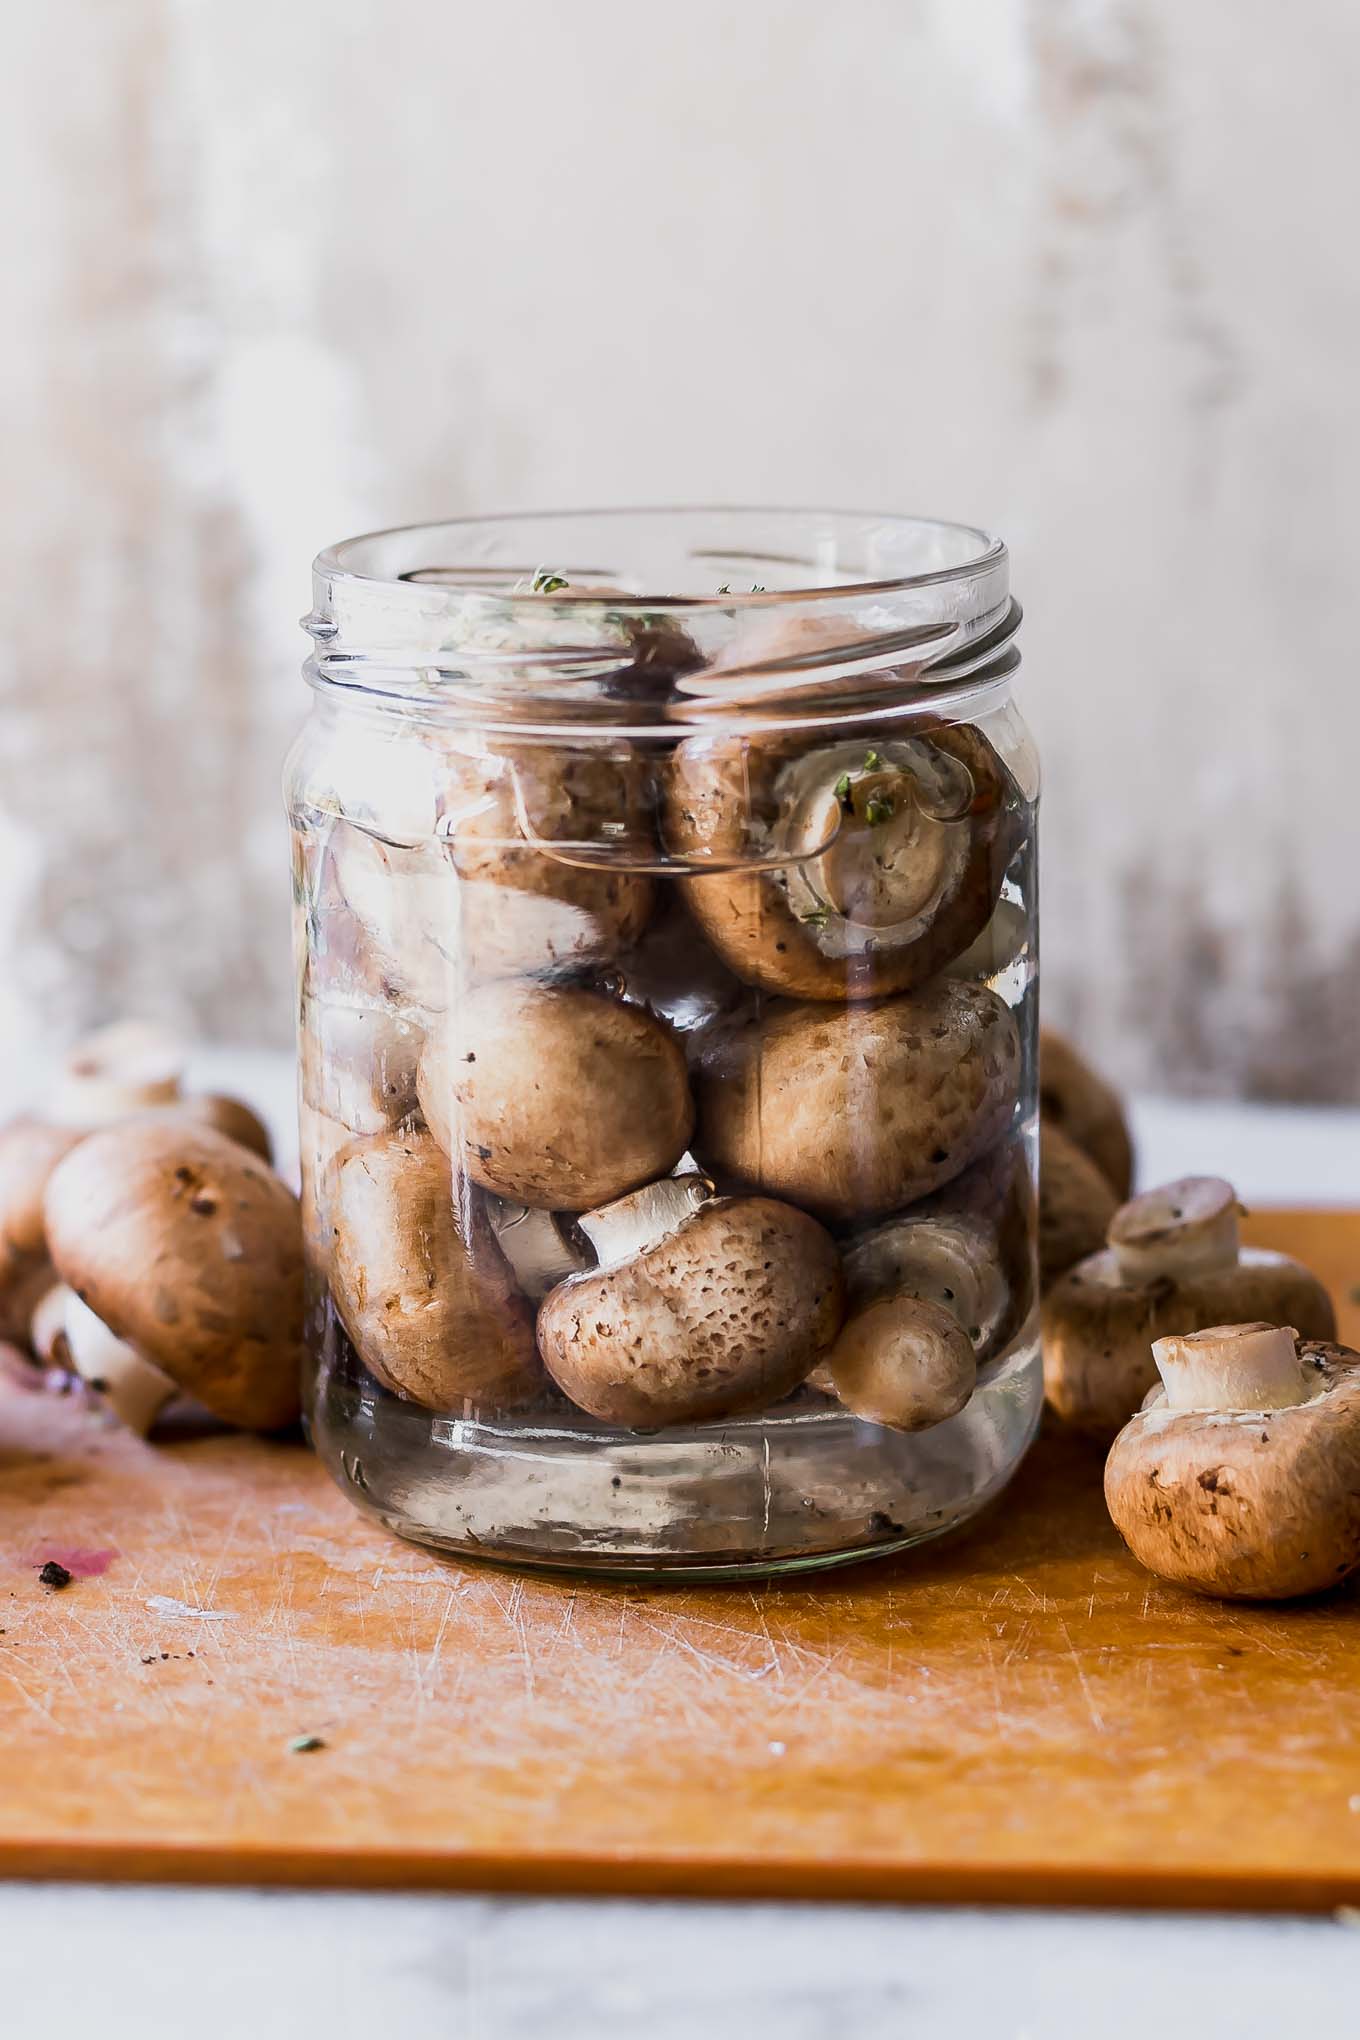 Quick Pickled Mushrooms ⋆ Easy Refrigerator Pickled Mushrooms!